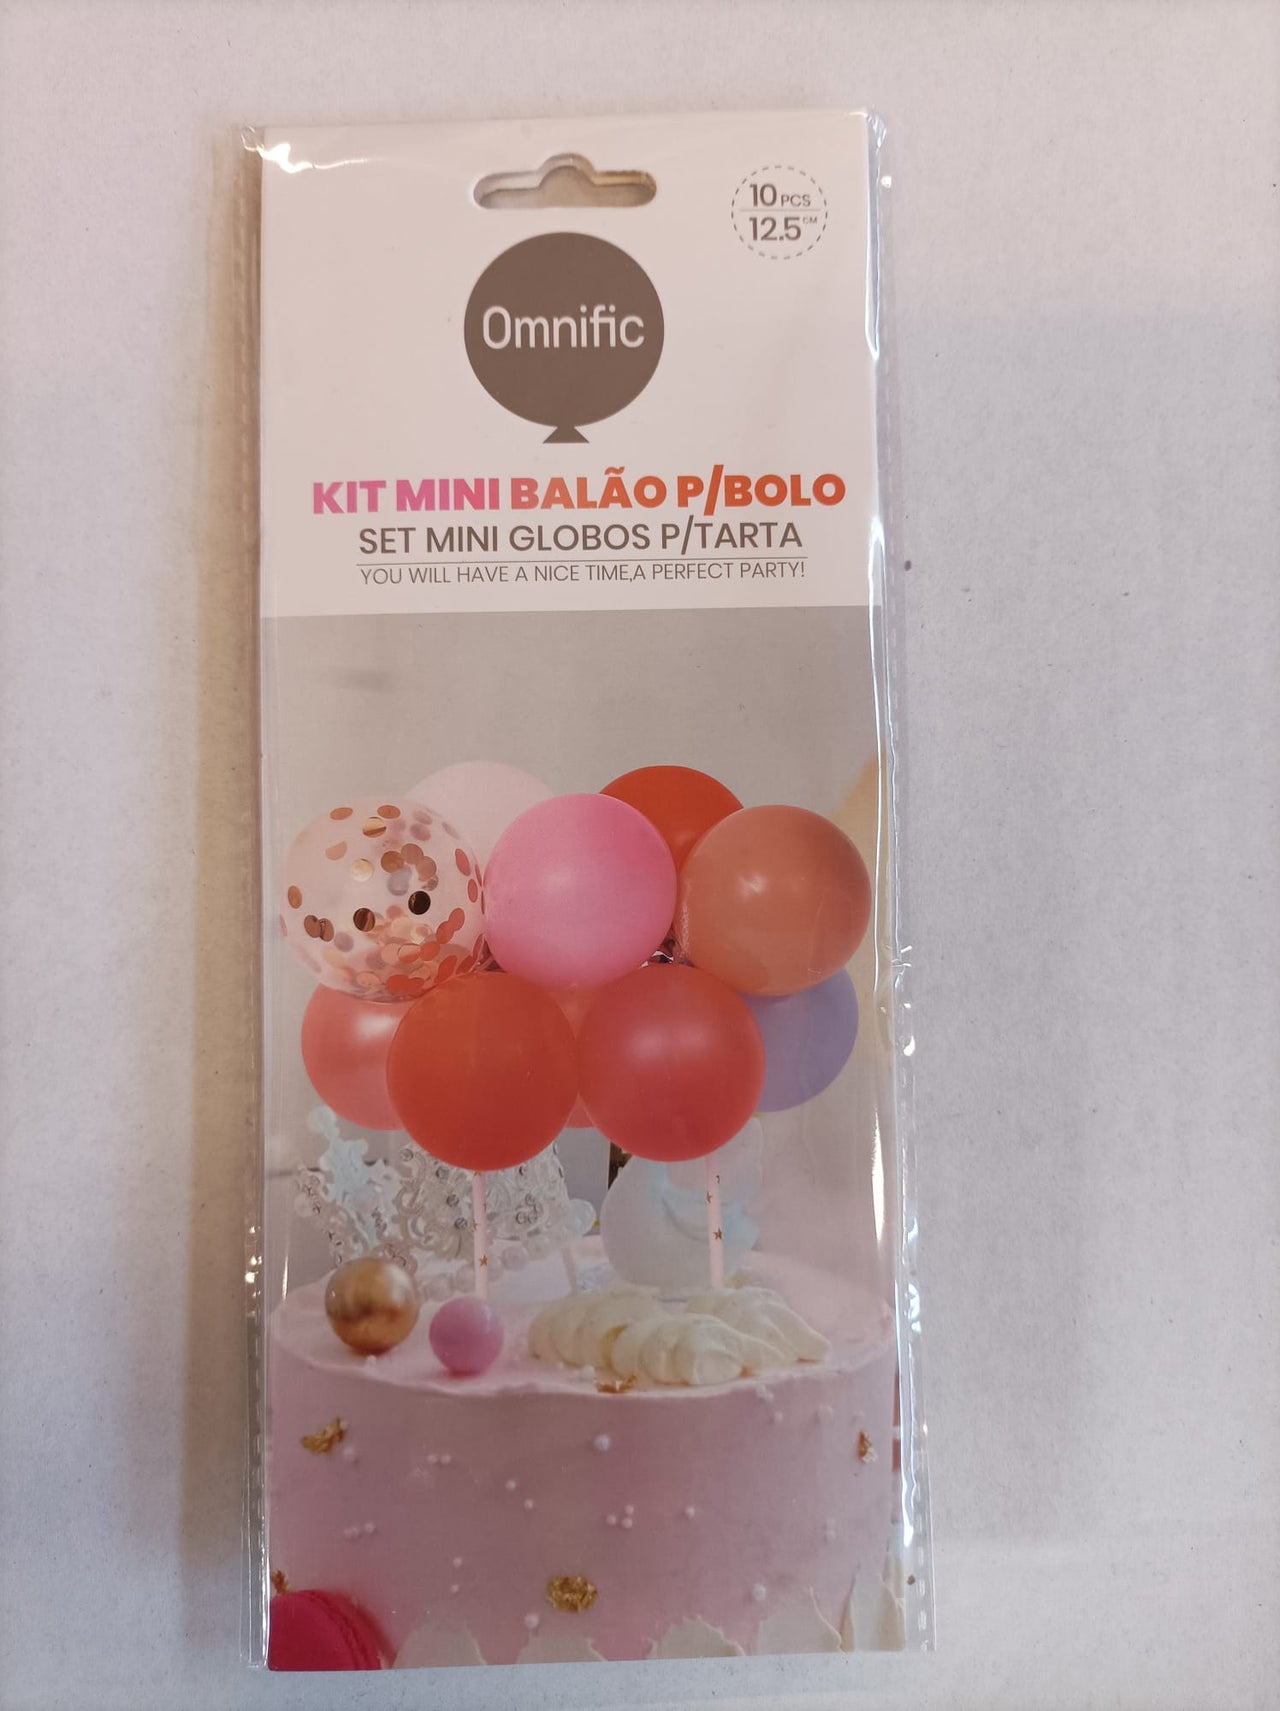 Kit Mini Balão para Bolo - 10pcs